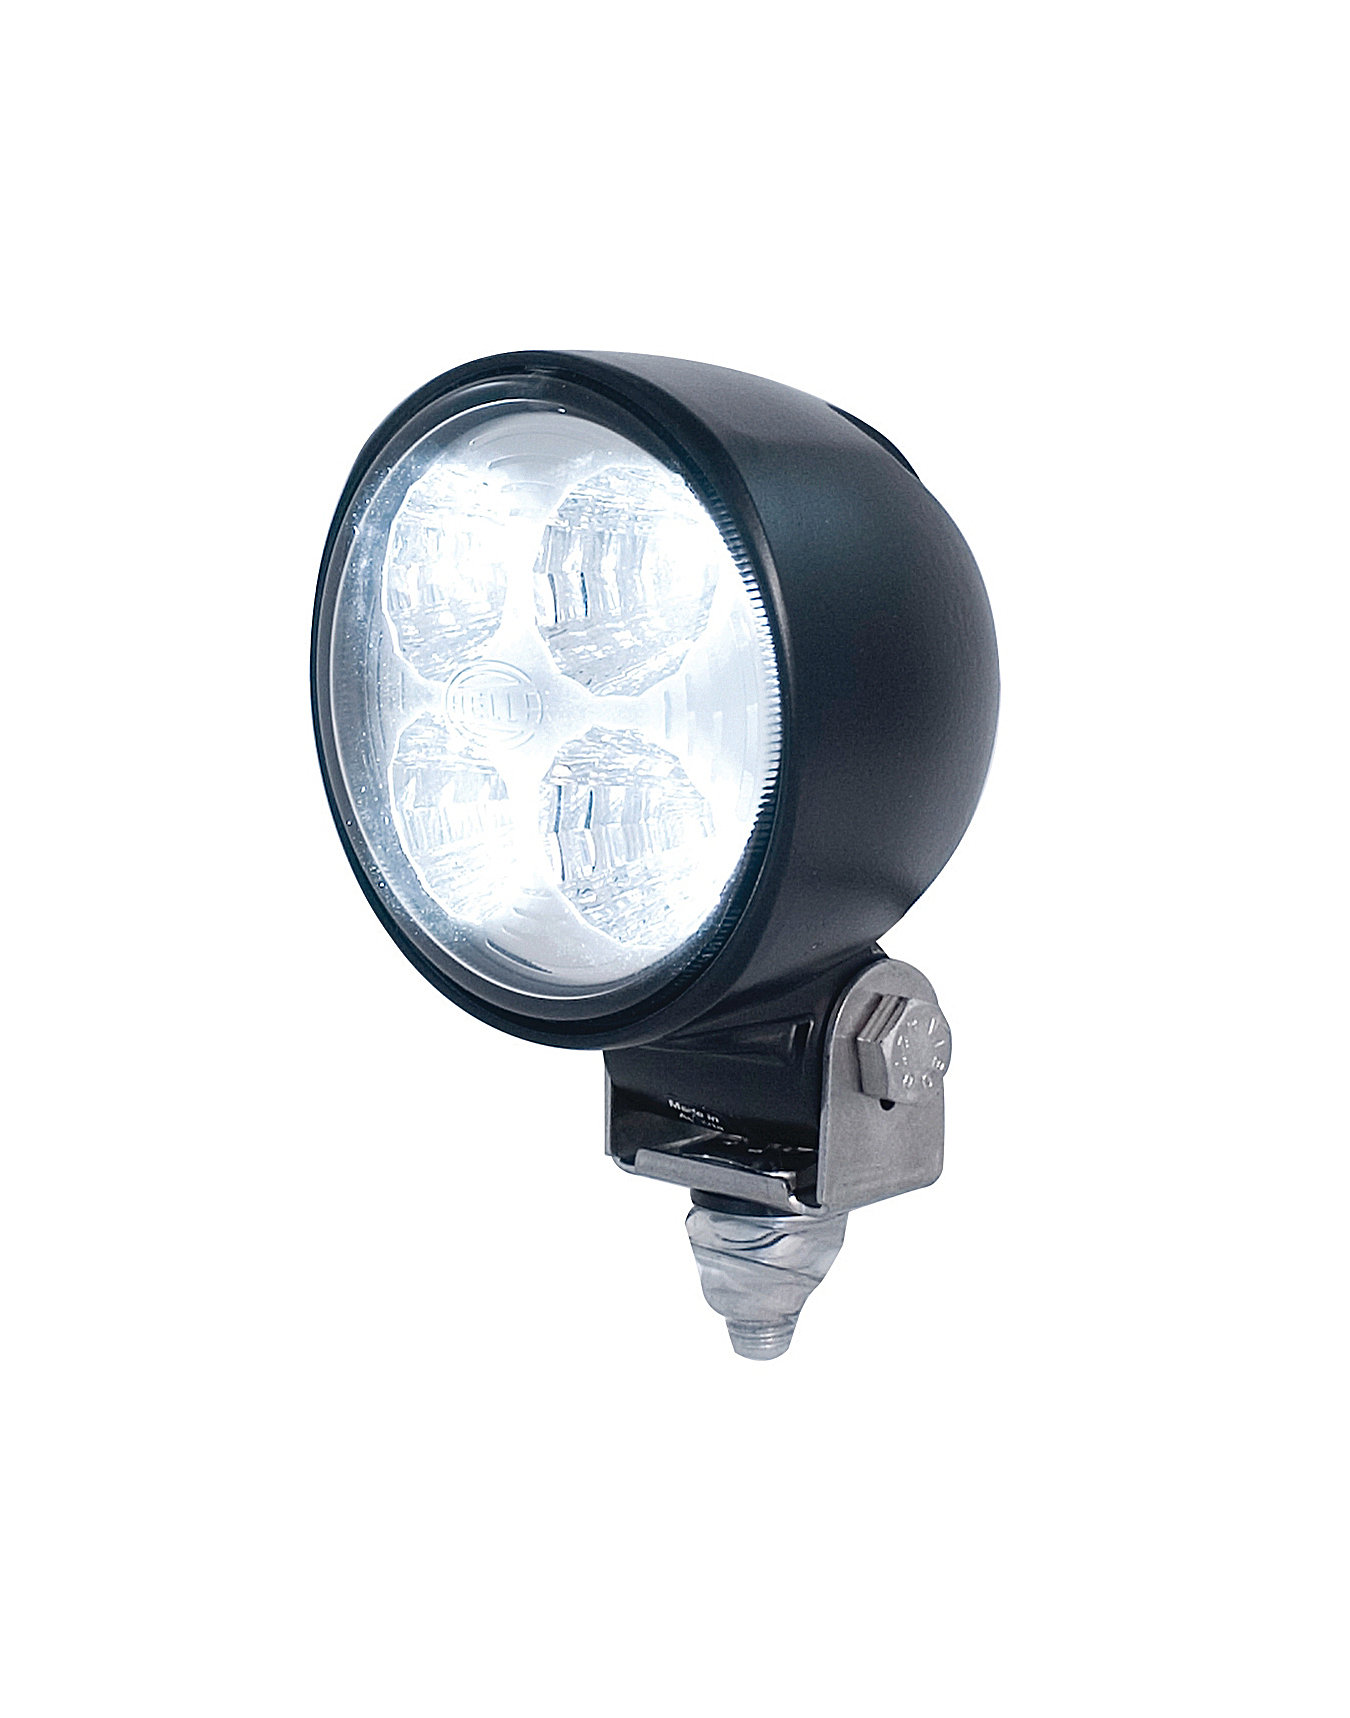 Hella H15176201 Micro 70 LED Driving Light Kit | Quadratec